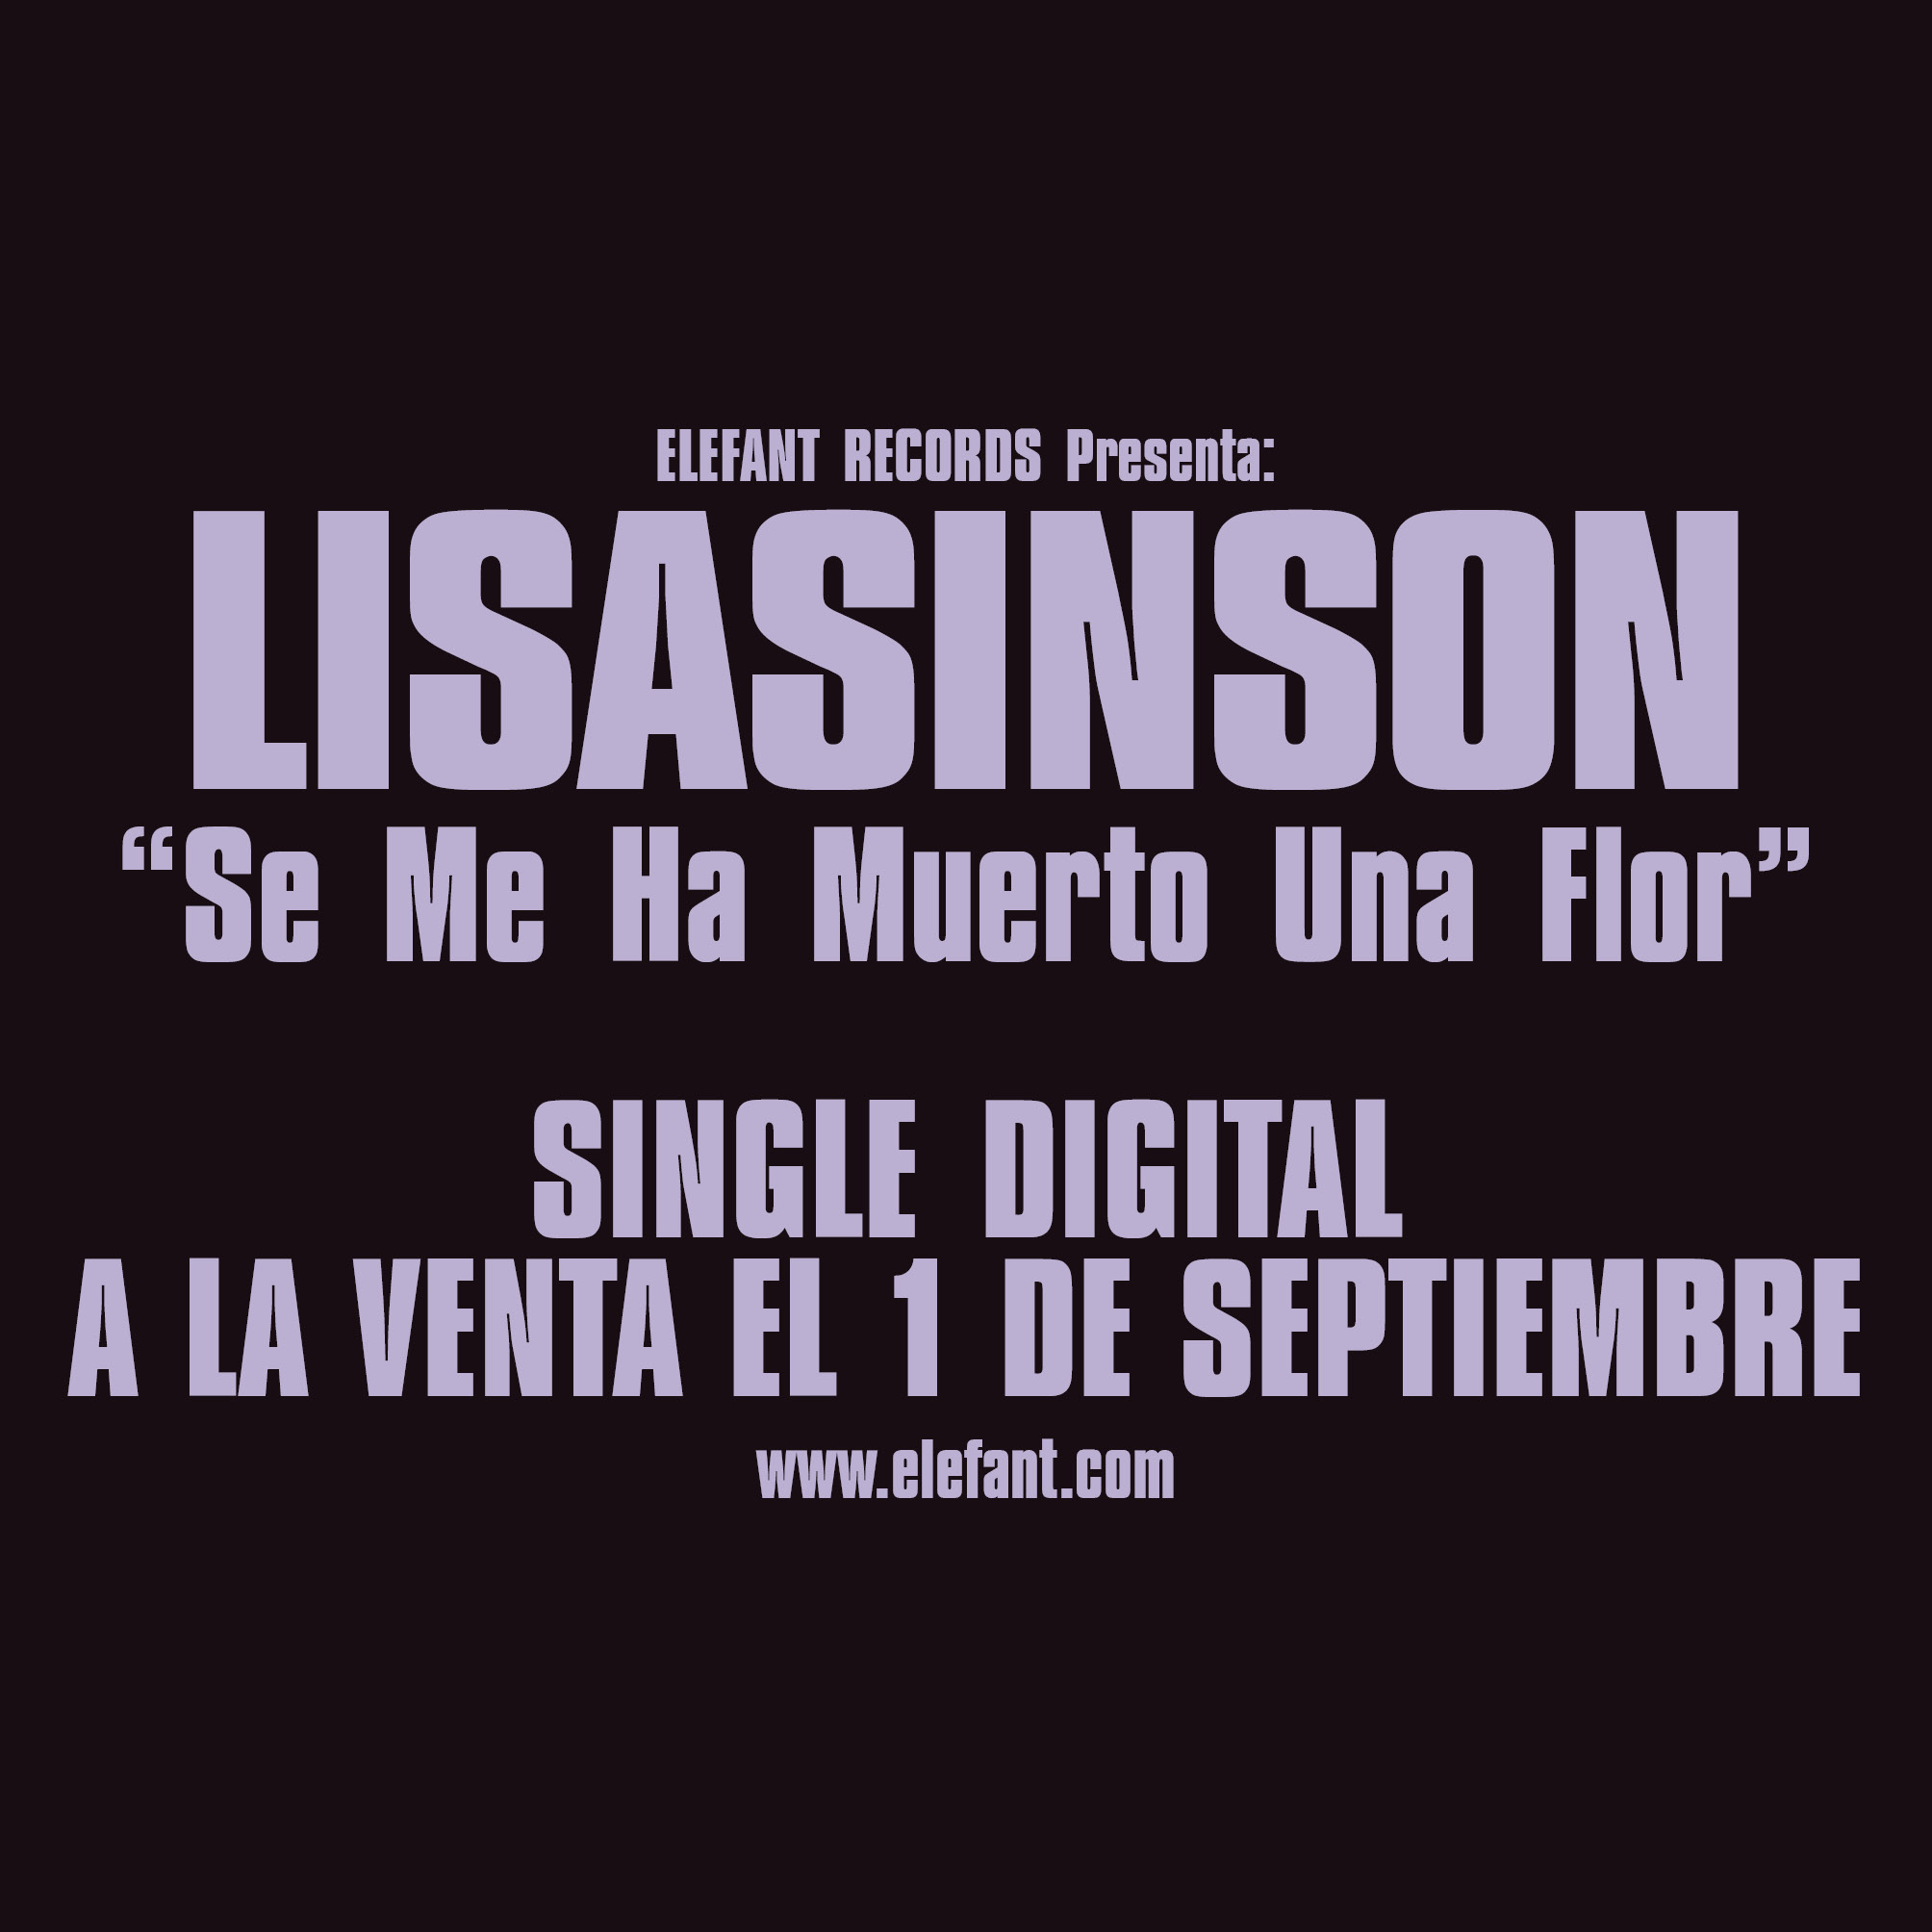 LISASINSON “Se Me Ha Muerto Una Flor" Single Digital